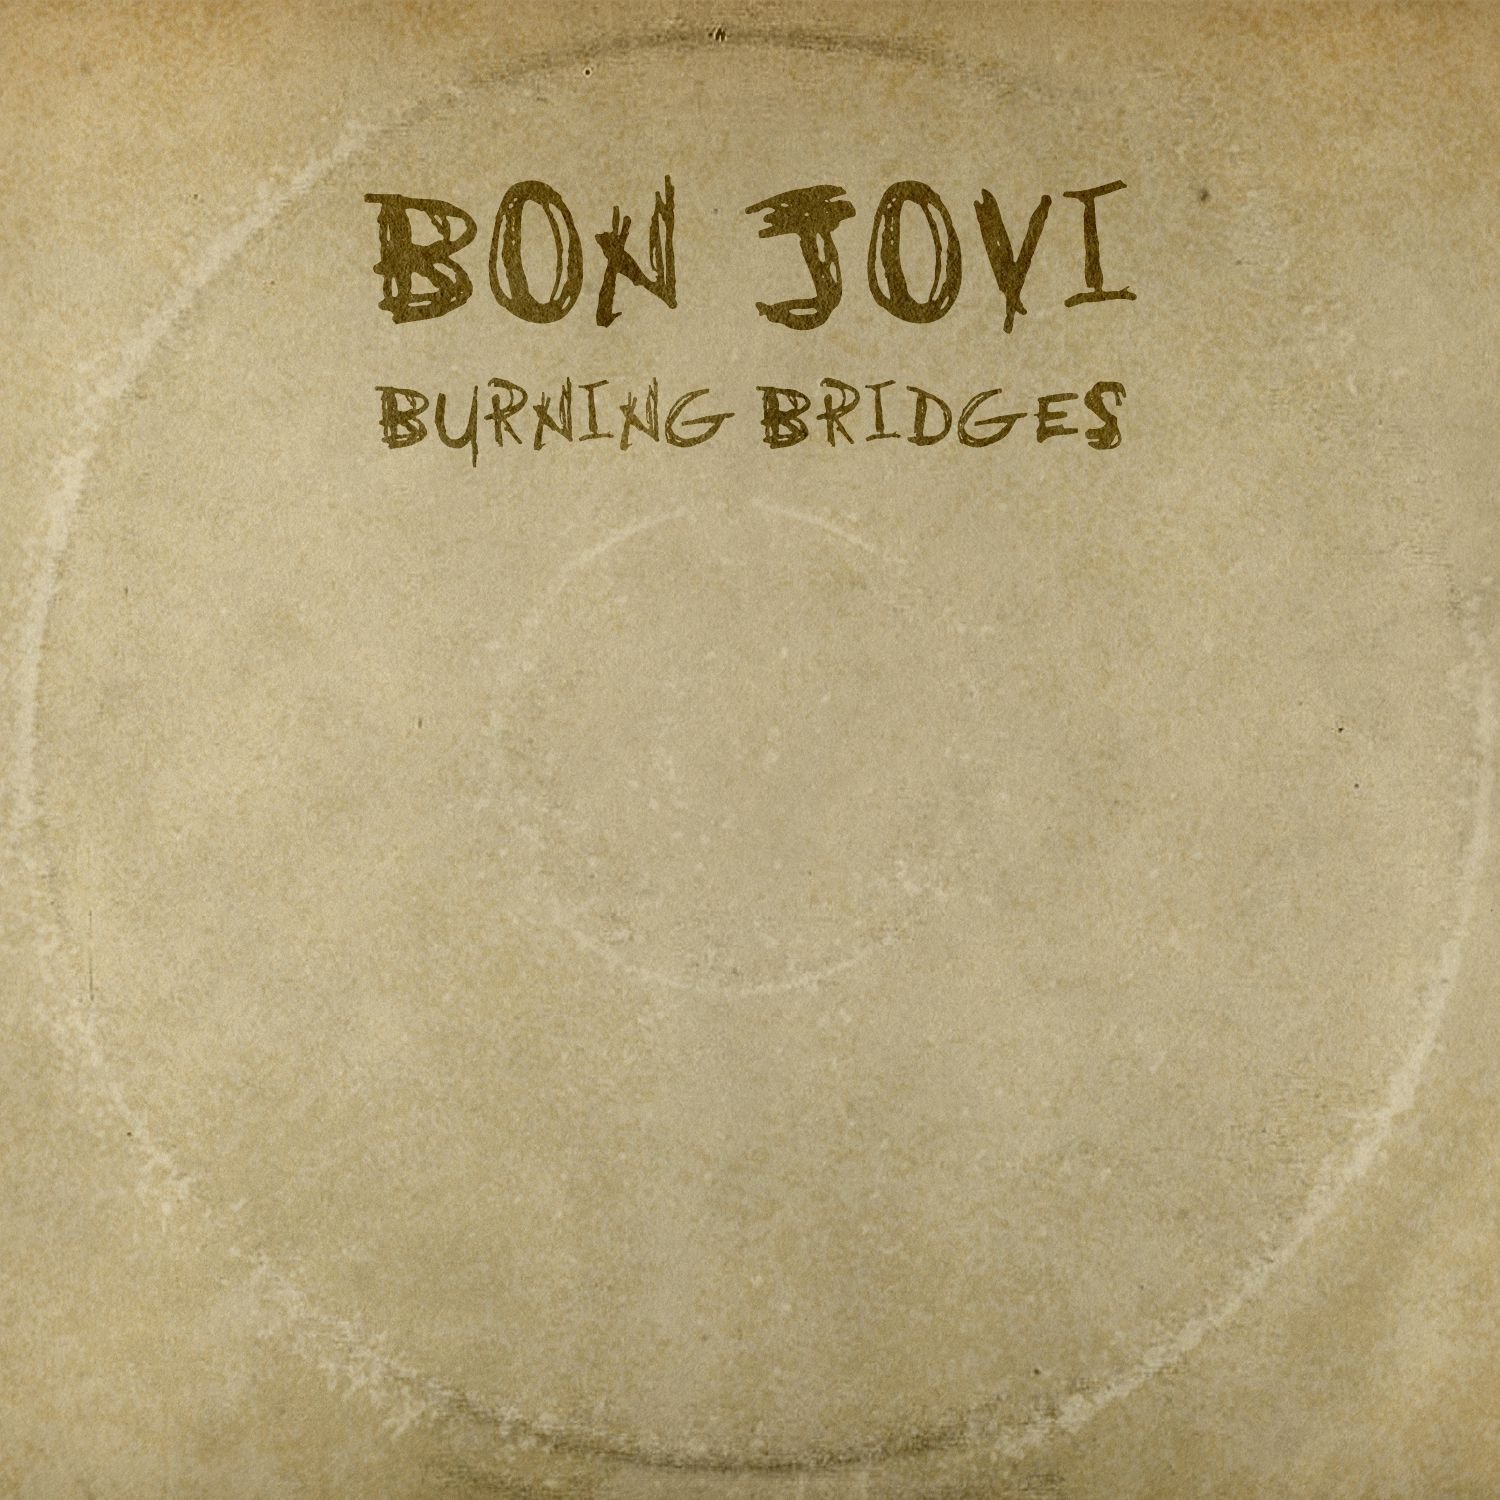 BON JOVI - Burning Bridges cover 